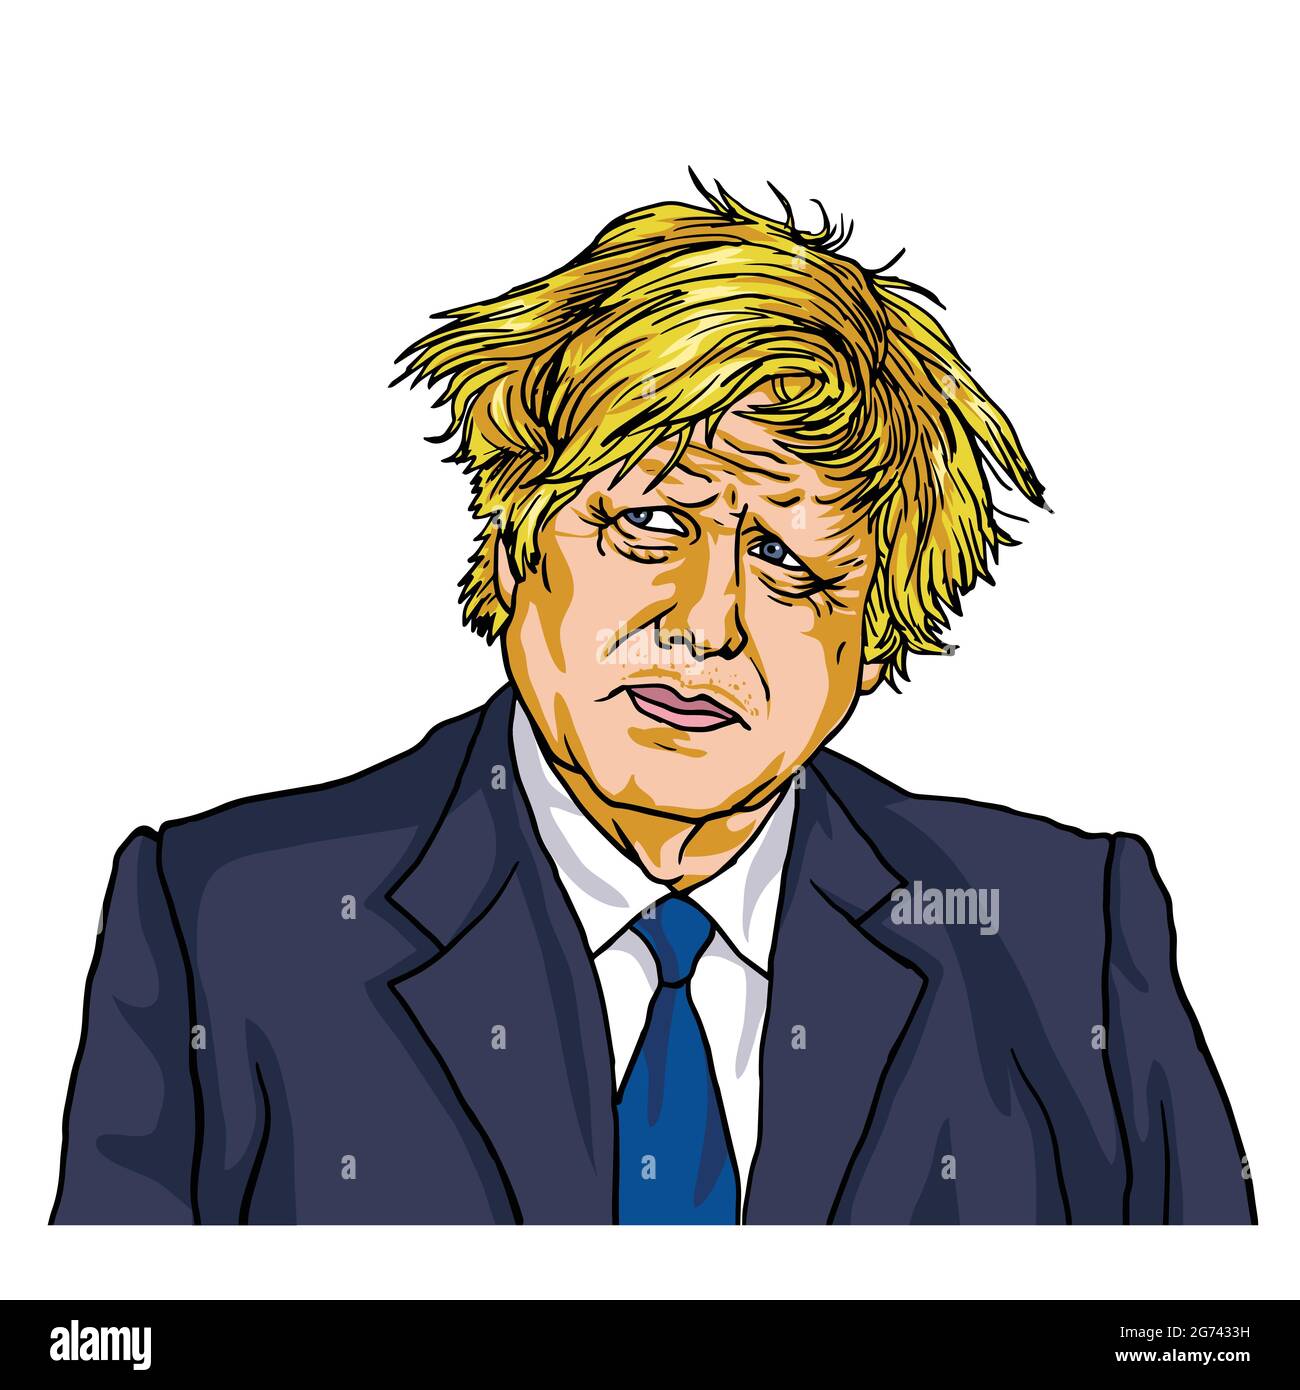 Boris Johnson, primo Ministro britannico, Cartoon Caricature Vector Illustration Drawing. Londra UK, 29 aprile 2021 Illustrazione Vettoriale